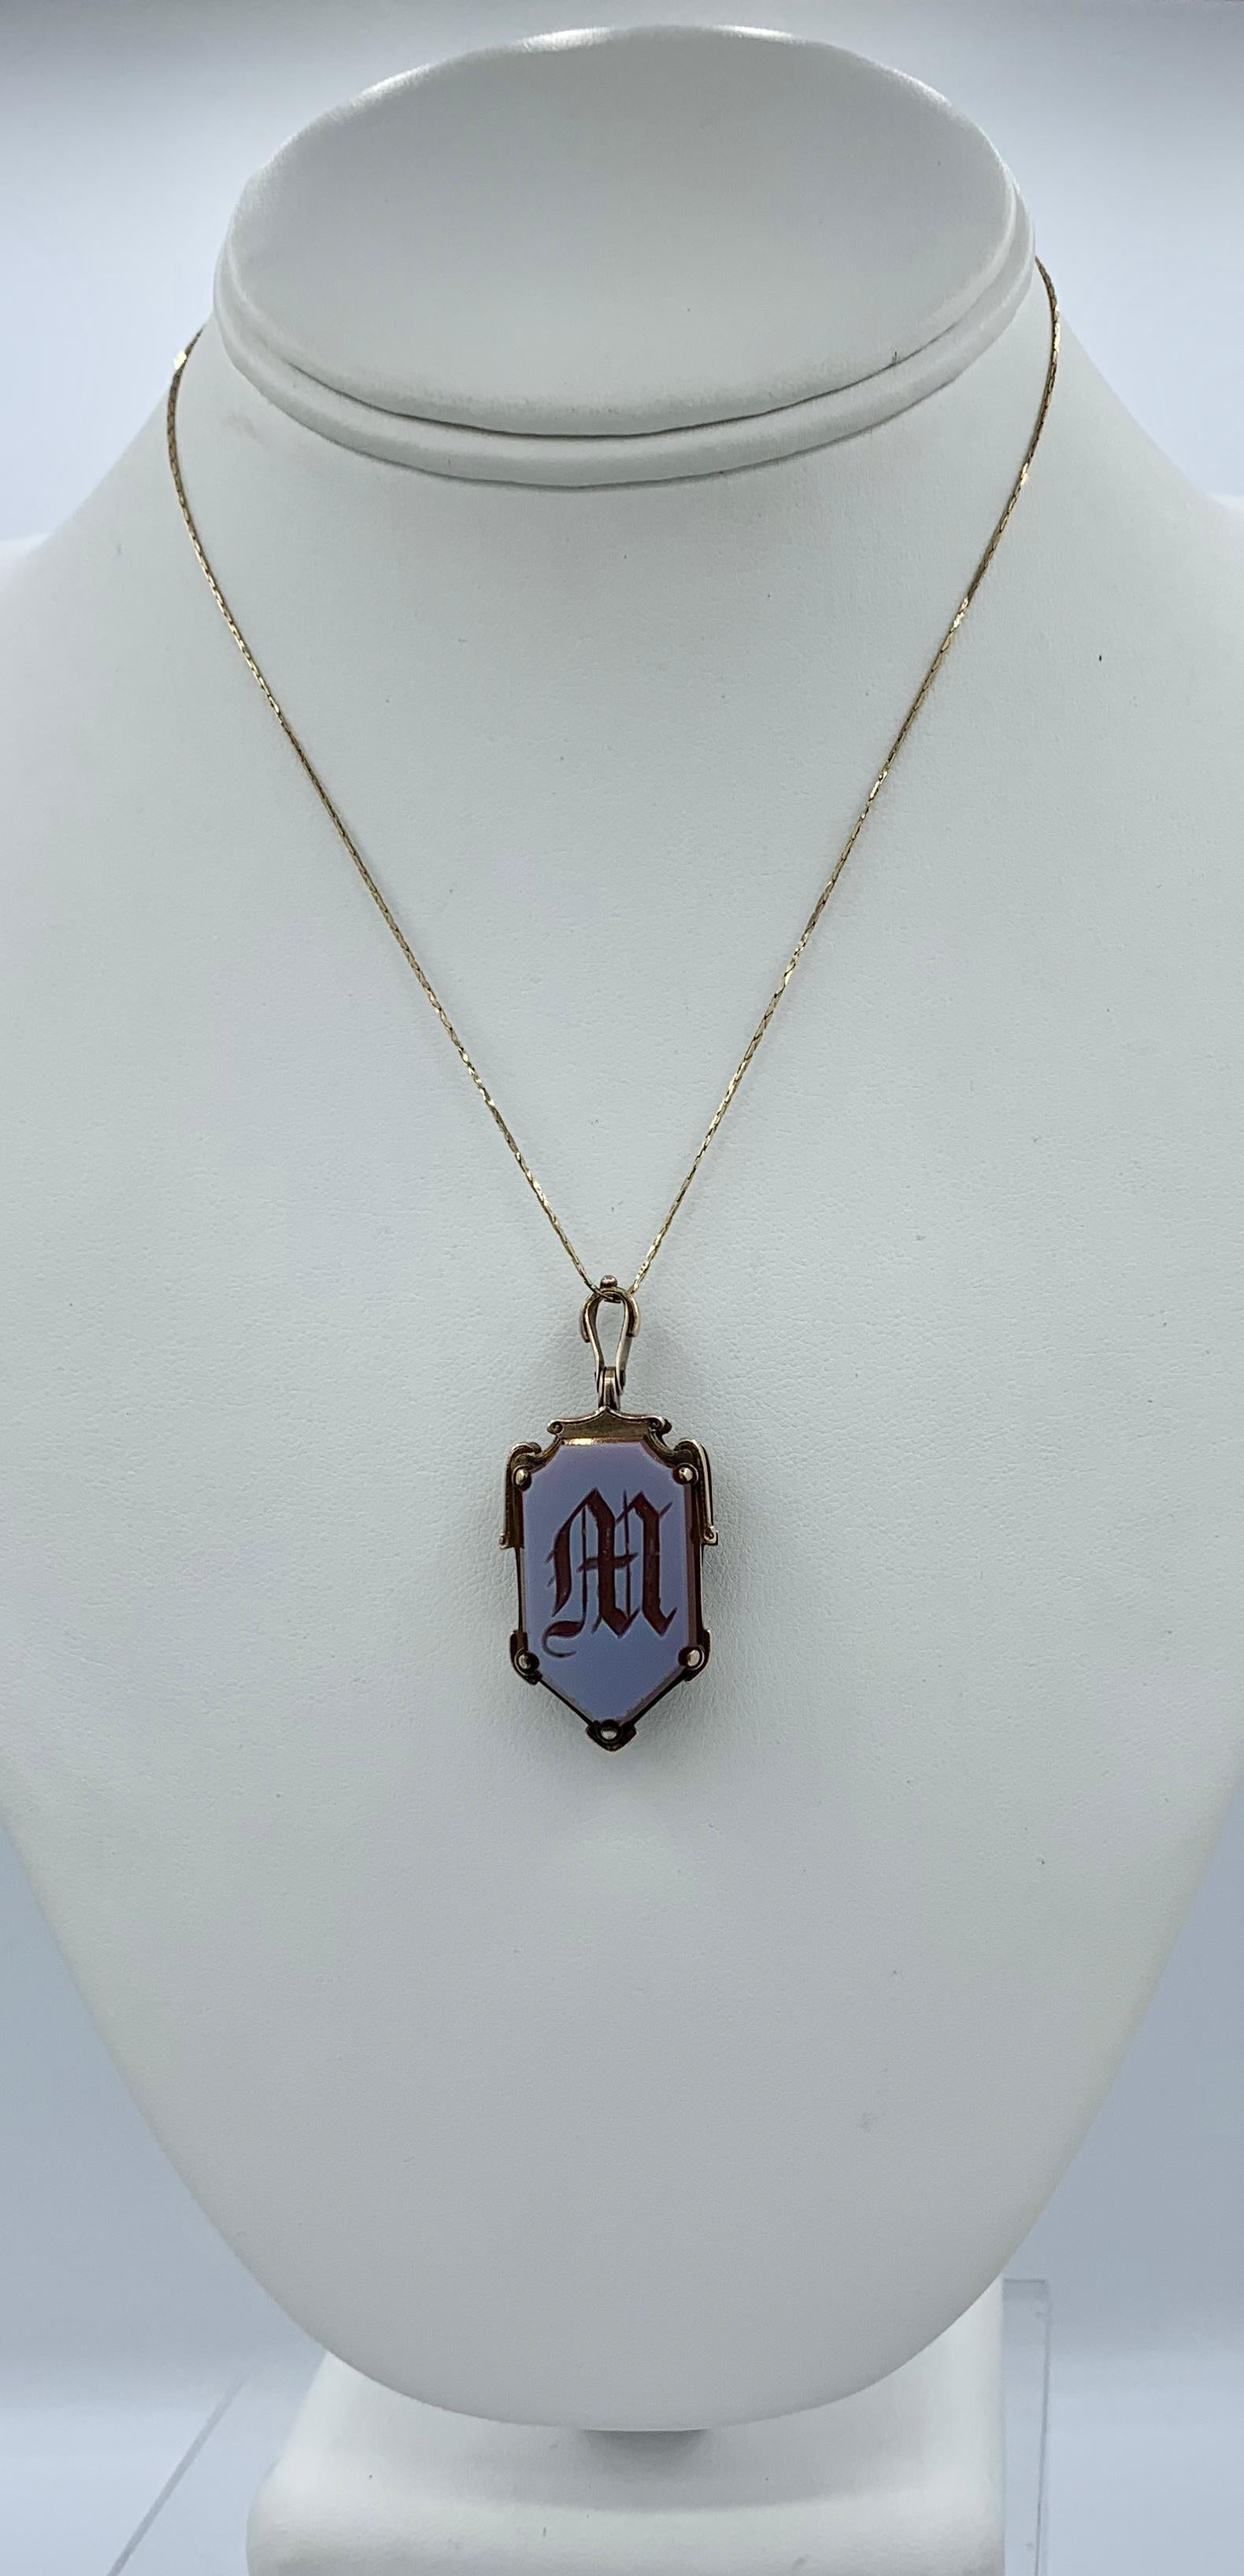 Un rare et merveilleux pendentif ancien Belle Epoque, Victorien, avec une belle initiale 